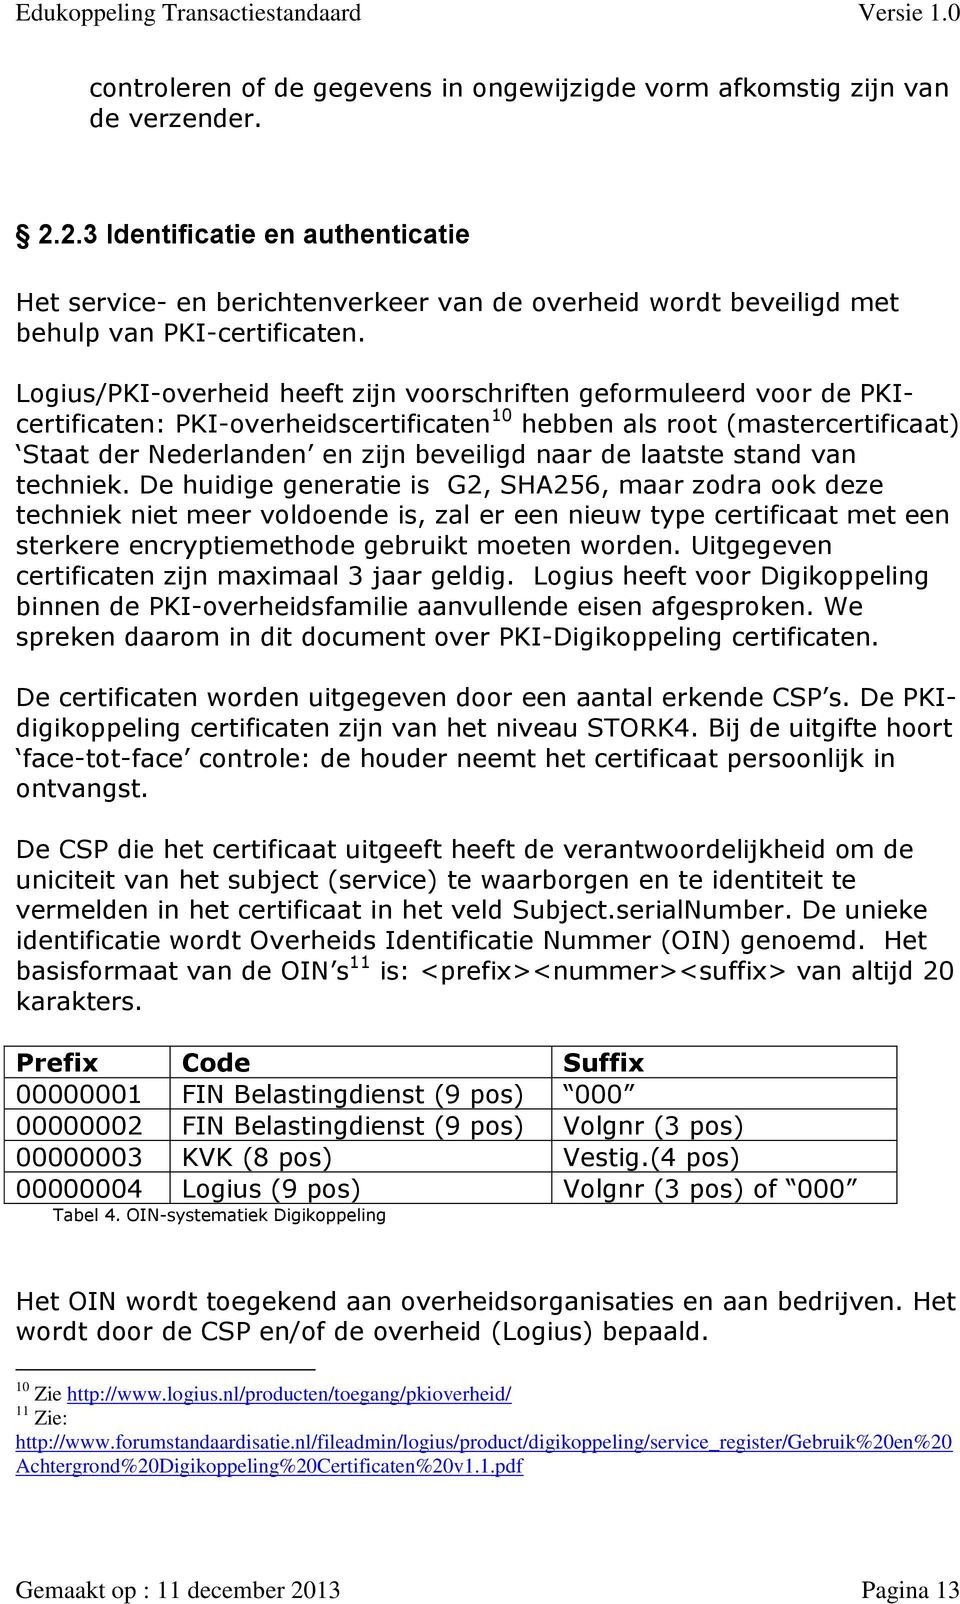 Logius/PKI-overheid heeft zijn voorschriften geformuleerd voor de PKIcertificaten: PKI-overheidscertificaten 10 hebben als root (mastercertificaat) Staat der Nederlanden en zijn beveiligd naar de